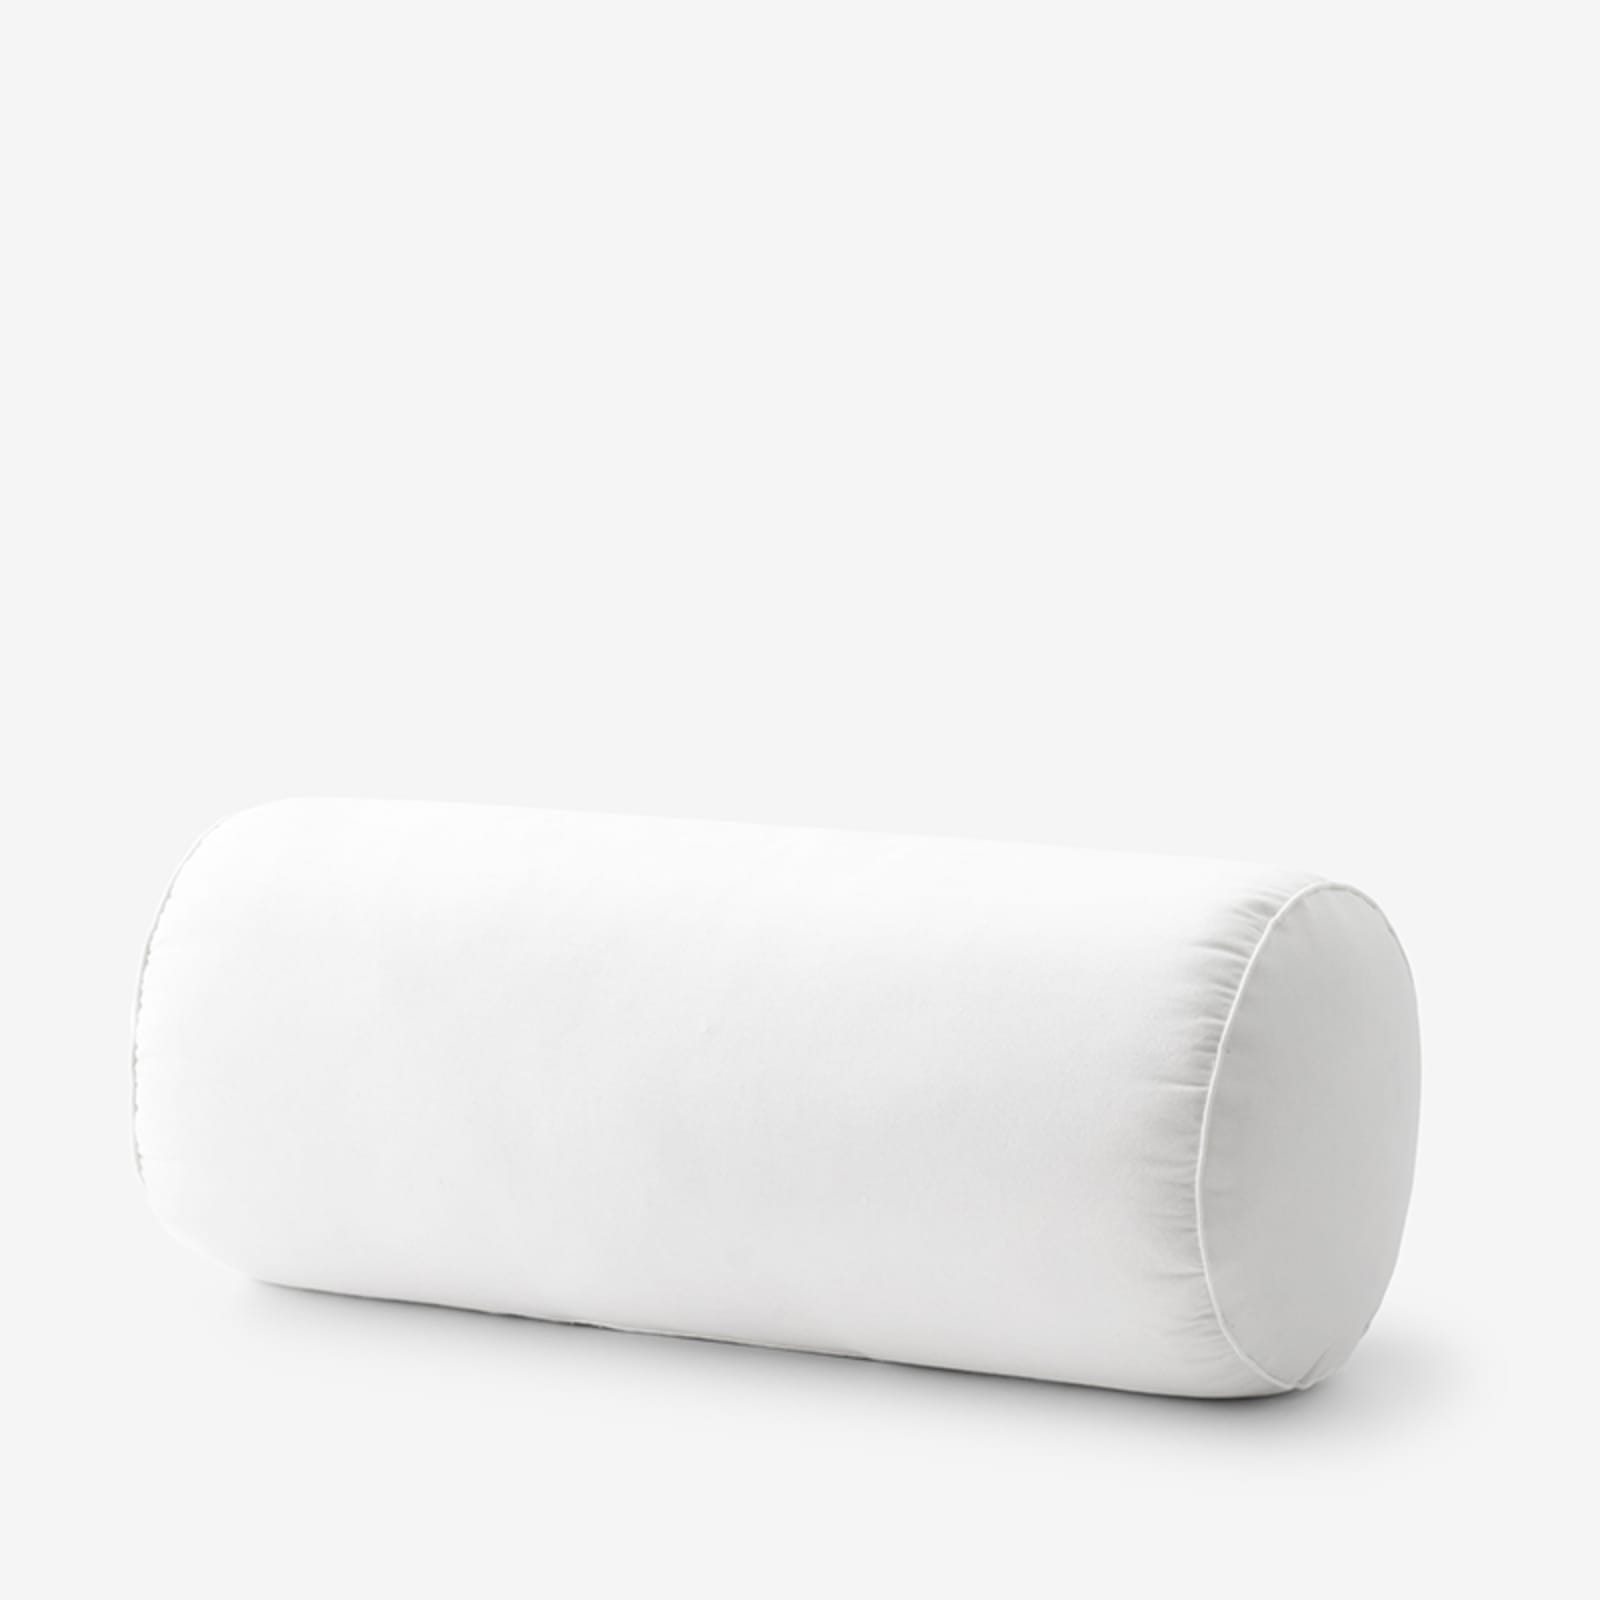 Indoor/Outdoor Bolster Pillow Insert 6 x 20